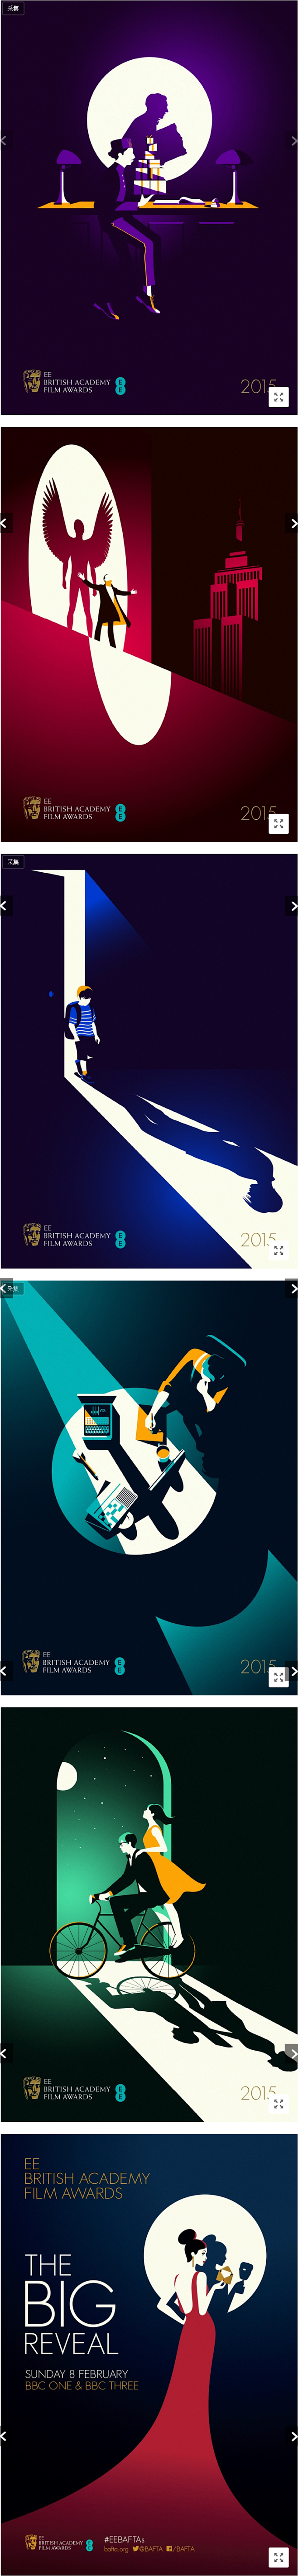 第68届英国电影学院奖海报设计 | 视觉...